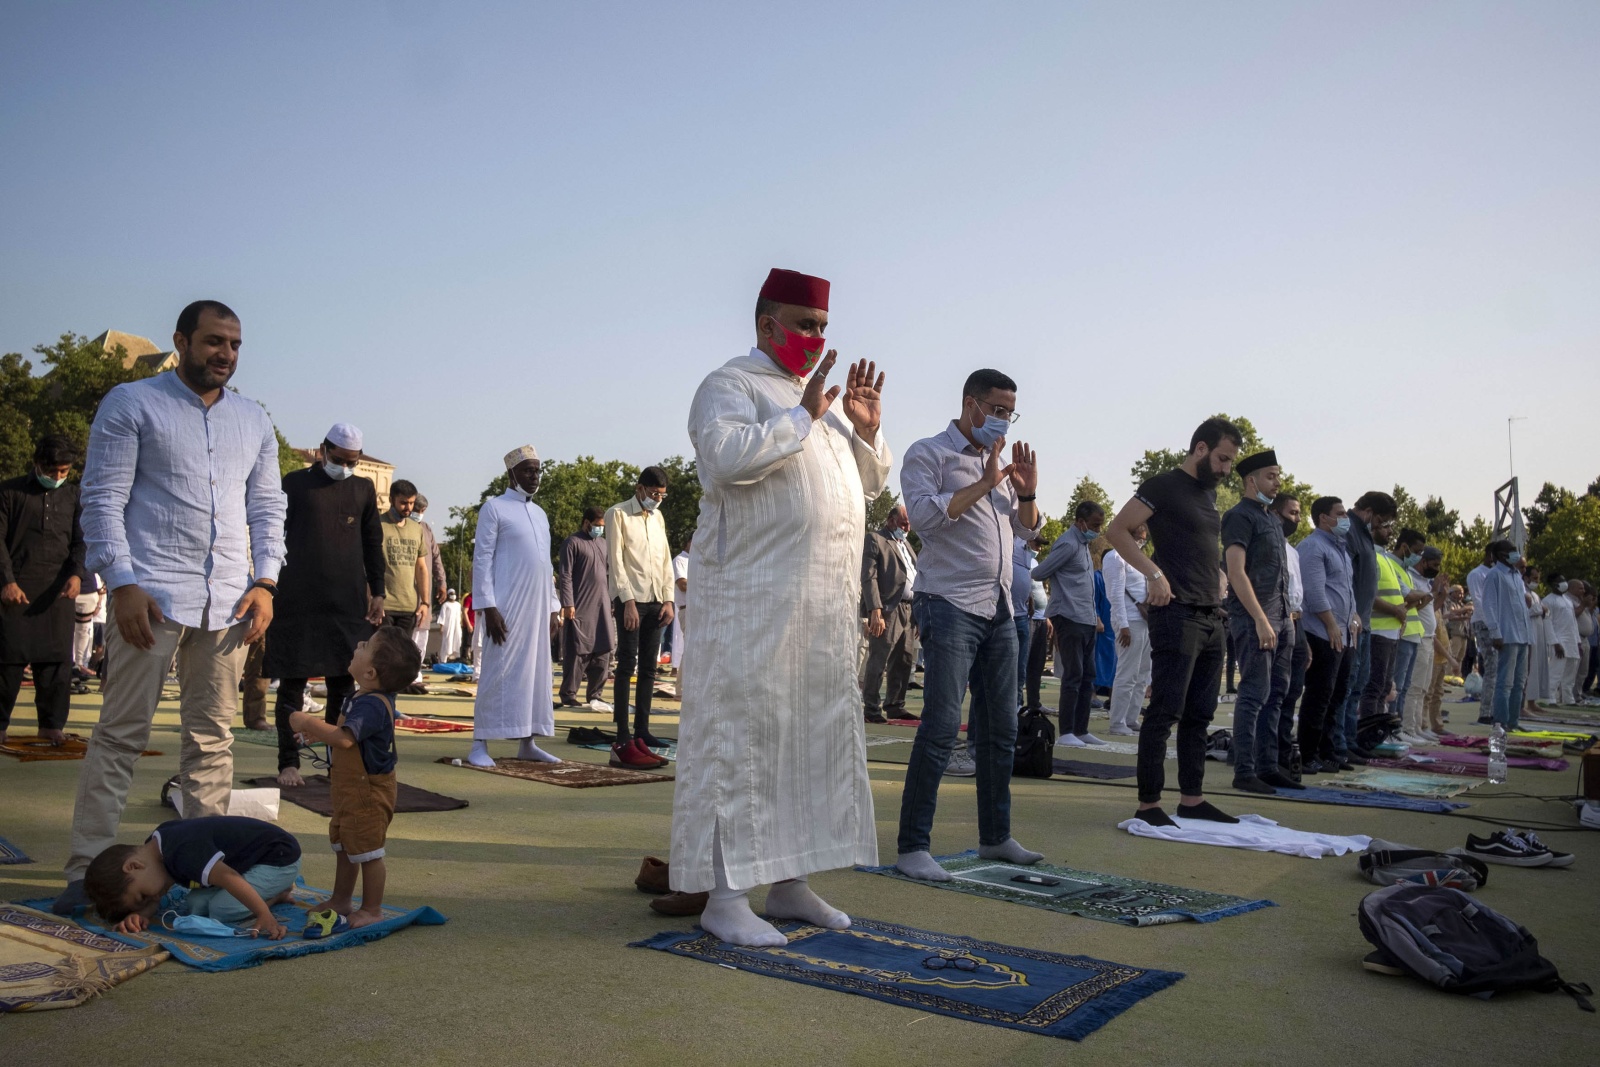 La festa del Sacrificio: “Eid al-Adha”, al parco del Valentino di Torino in osservanza al decreto di distanziamento per la pandemia Covid19